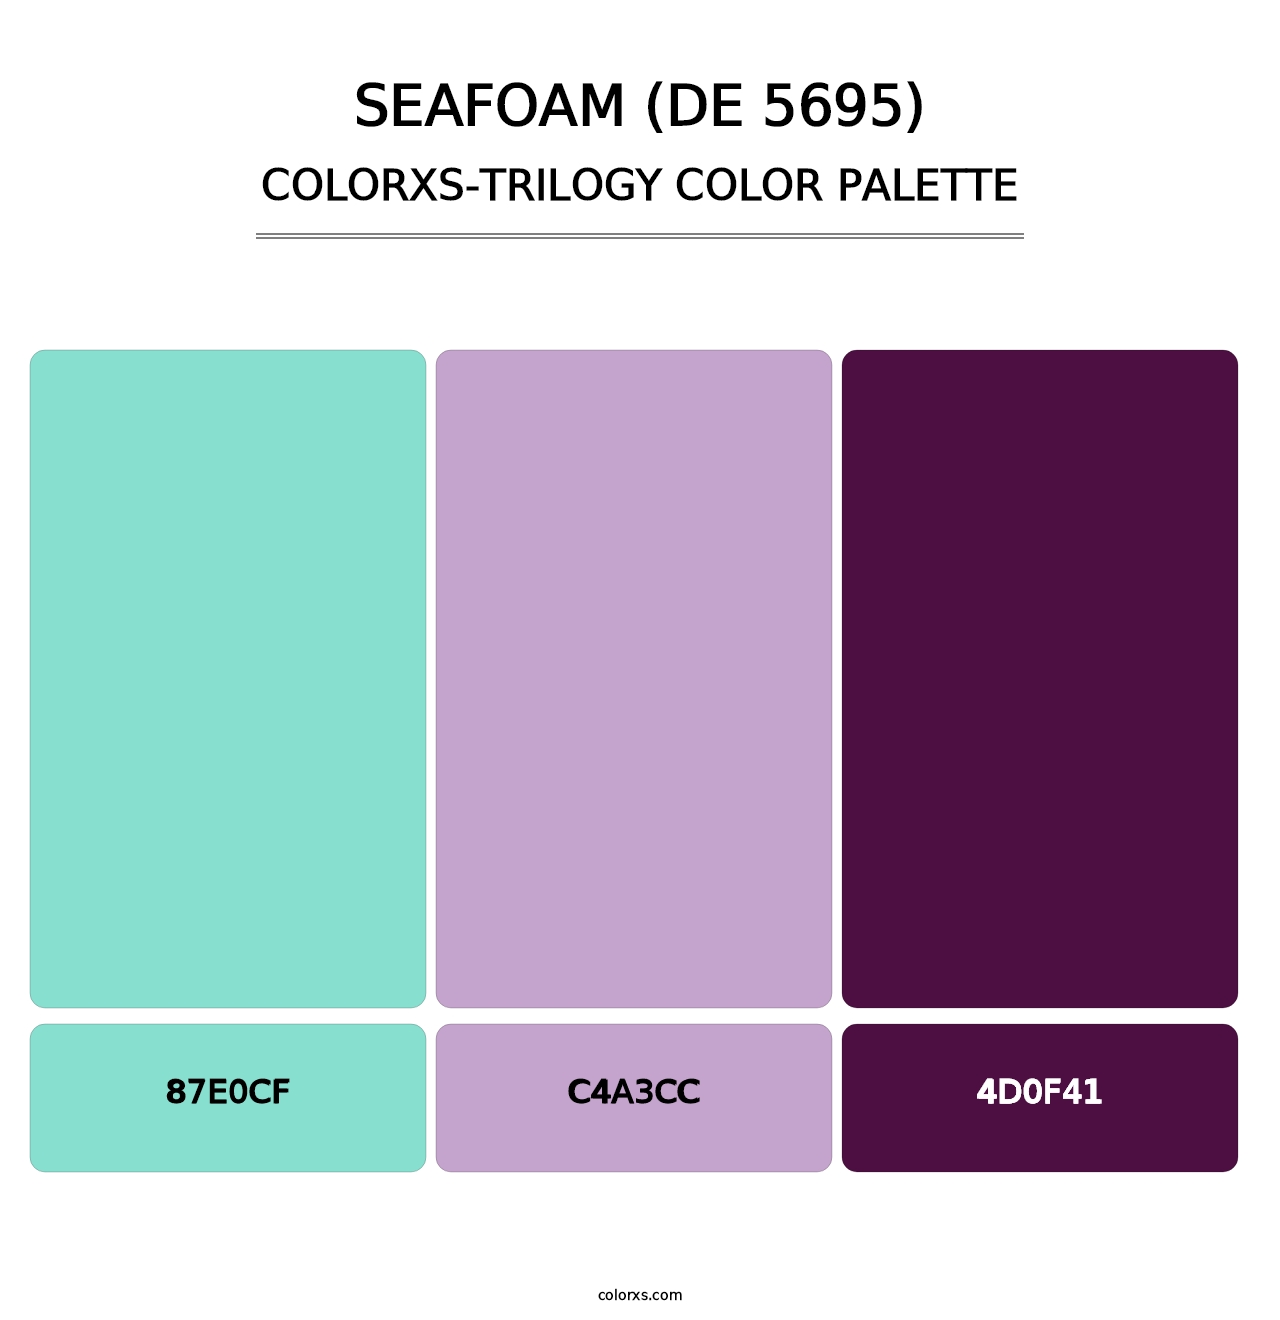 Seafoam (DE 5695) - Colorxs Trilogy Palette